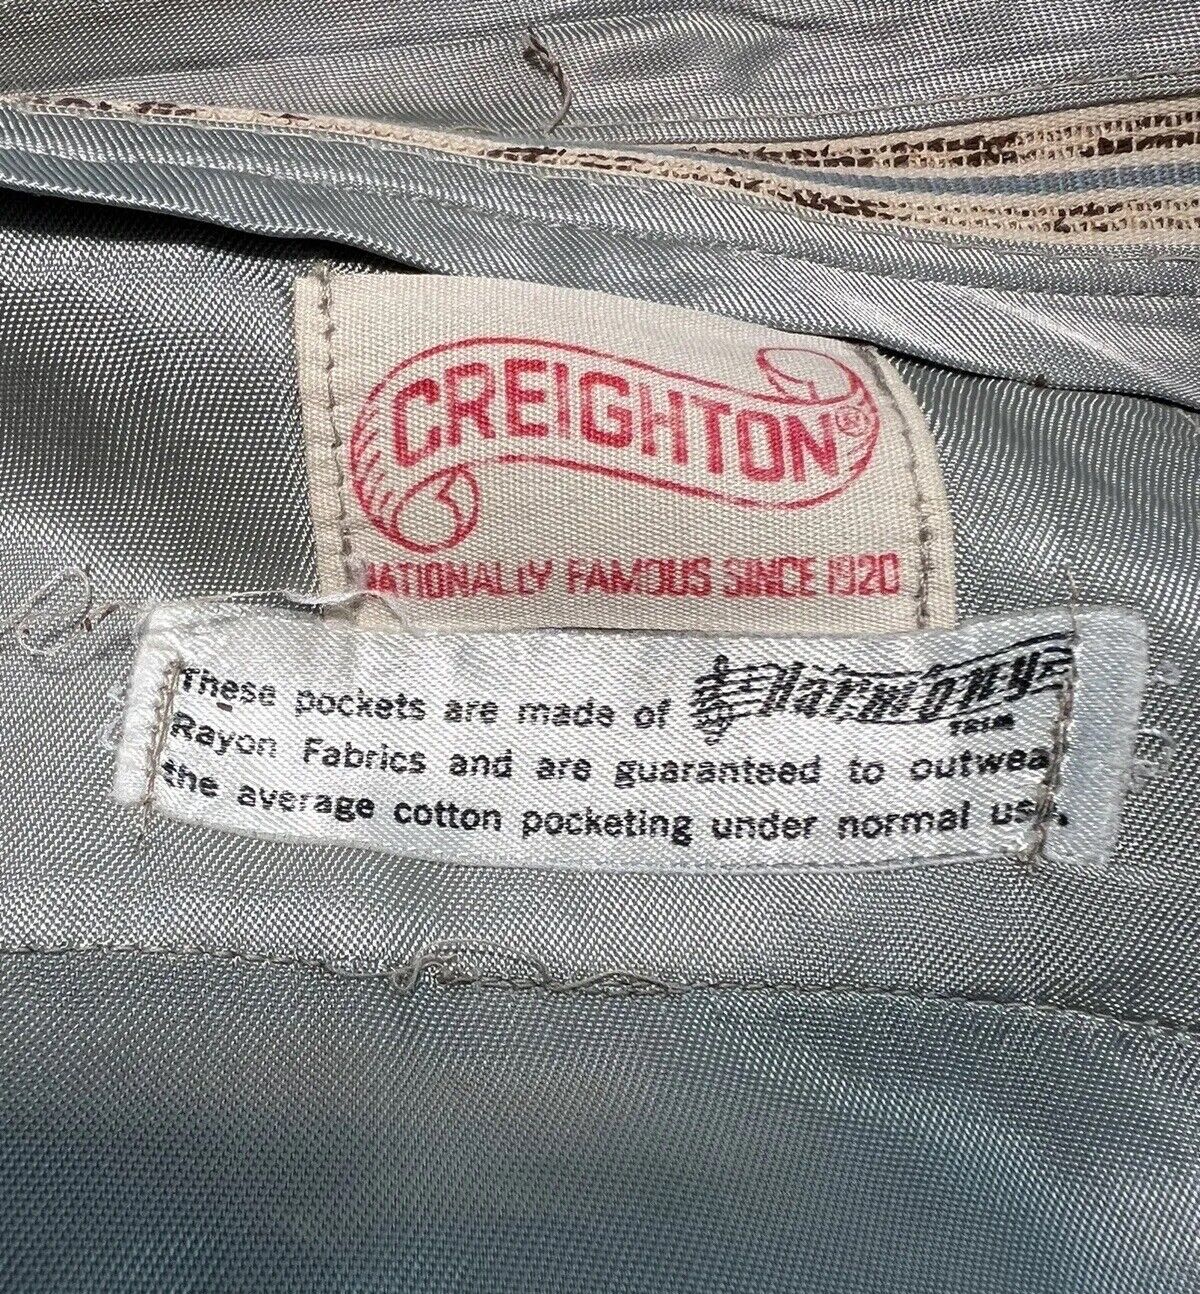 Vintage WW2 US Army Creighton Harmony Khaki Trousers Pants Men's Size 37 x 31